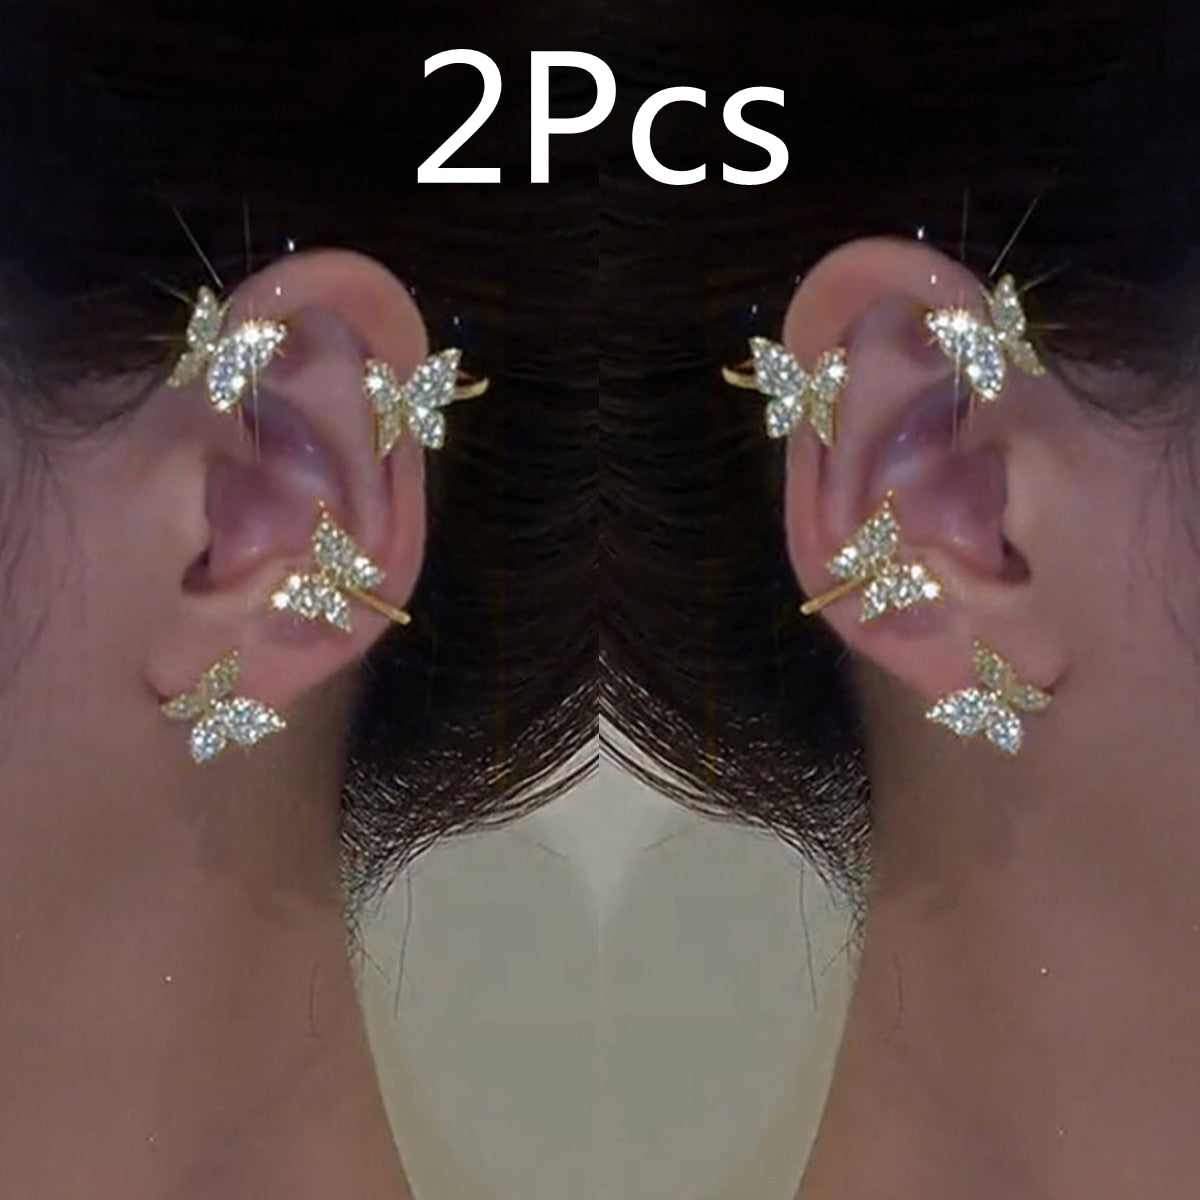 Kpop Shiny Zircon Butterfly Earcuff For Women Without Piercing Earrings 2022 Fashion Ear Clip Earrings Bride Wedding Jewelry